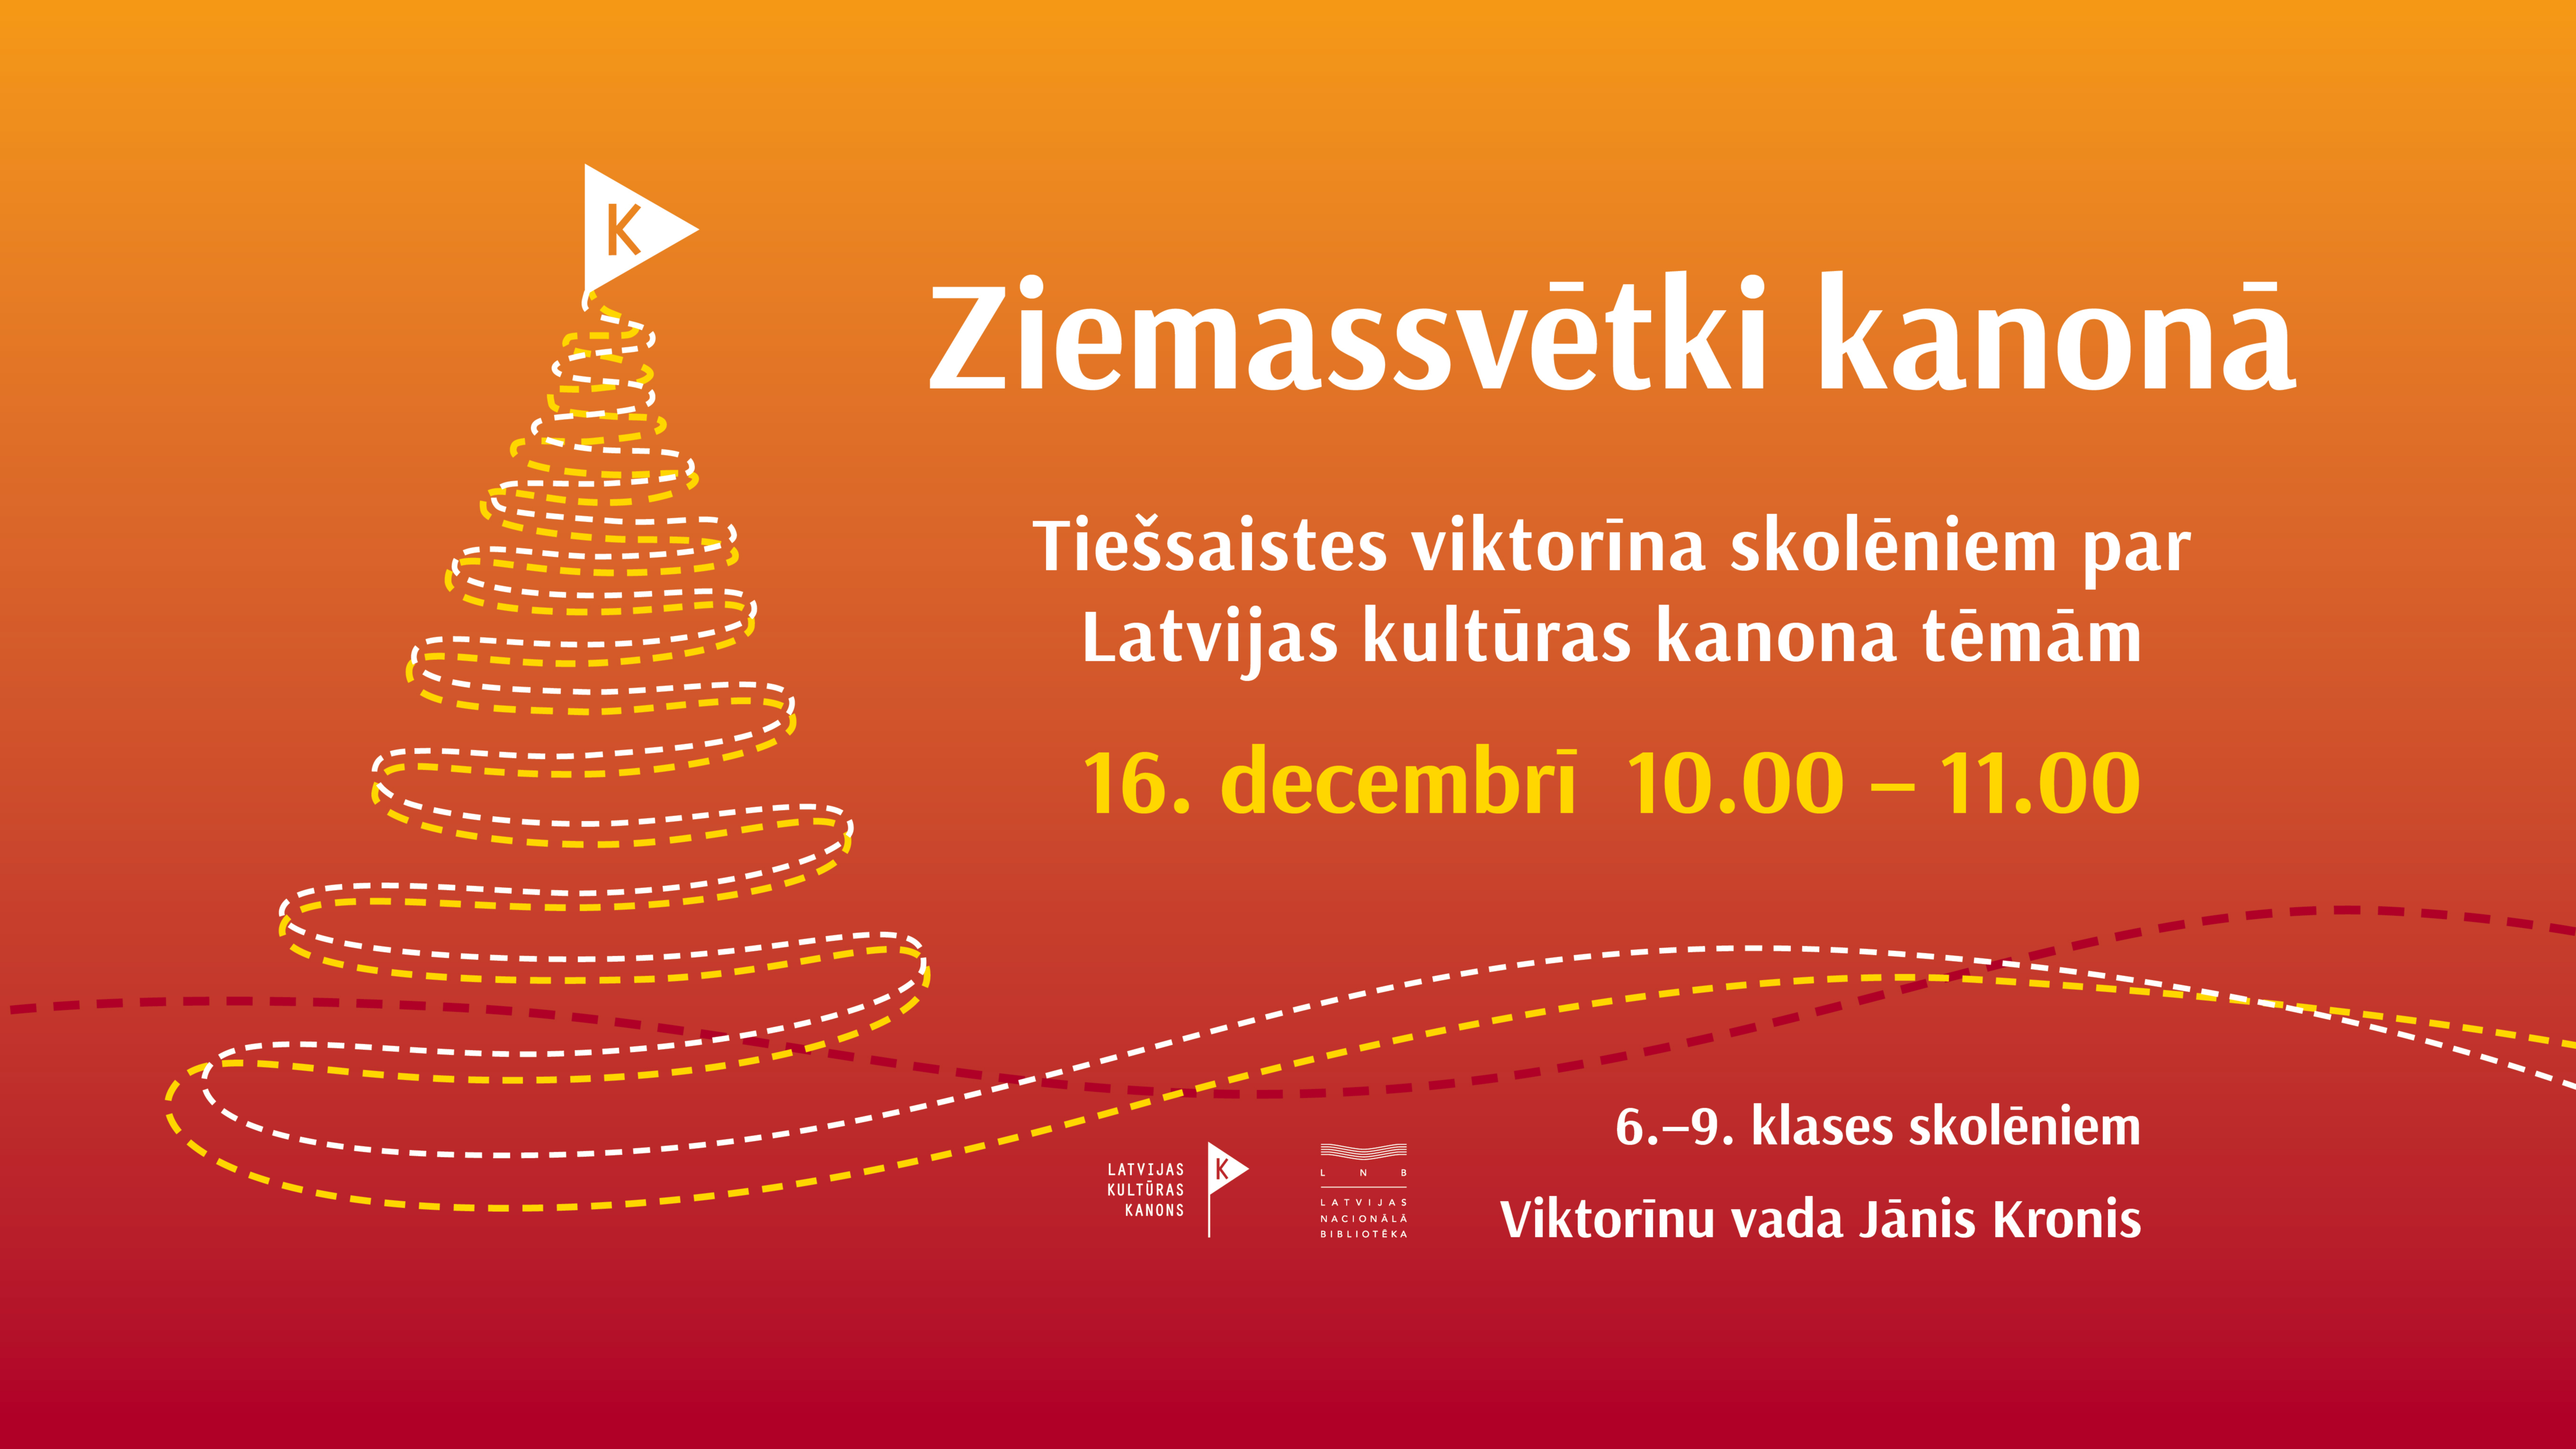 "Ziemassvētki kanonā" – tiešsaistes viktorīna skolēniem par Latvijas kultūras kanona tēmām